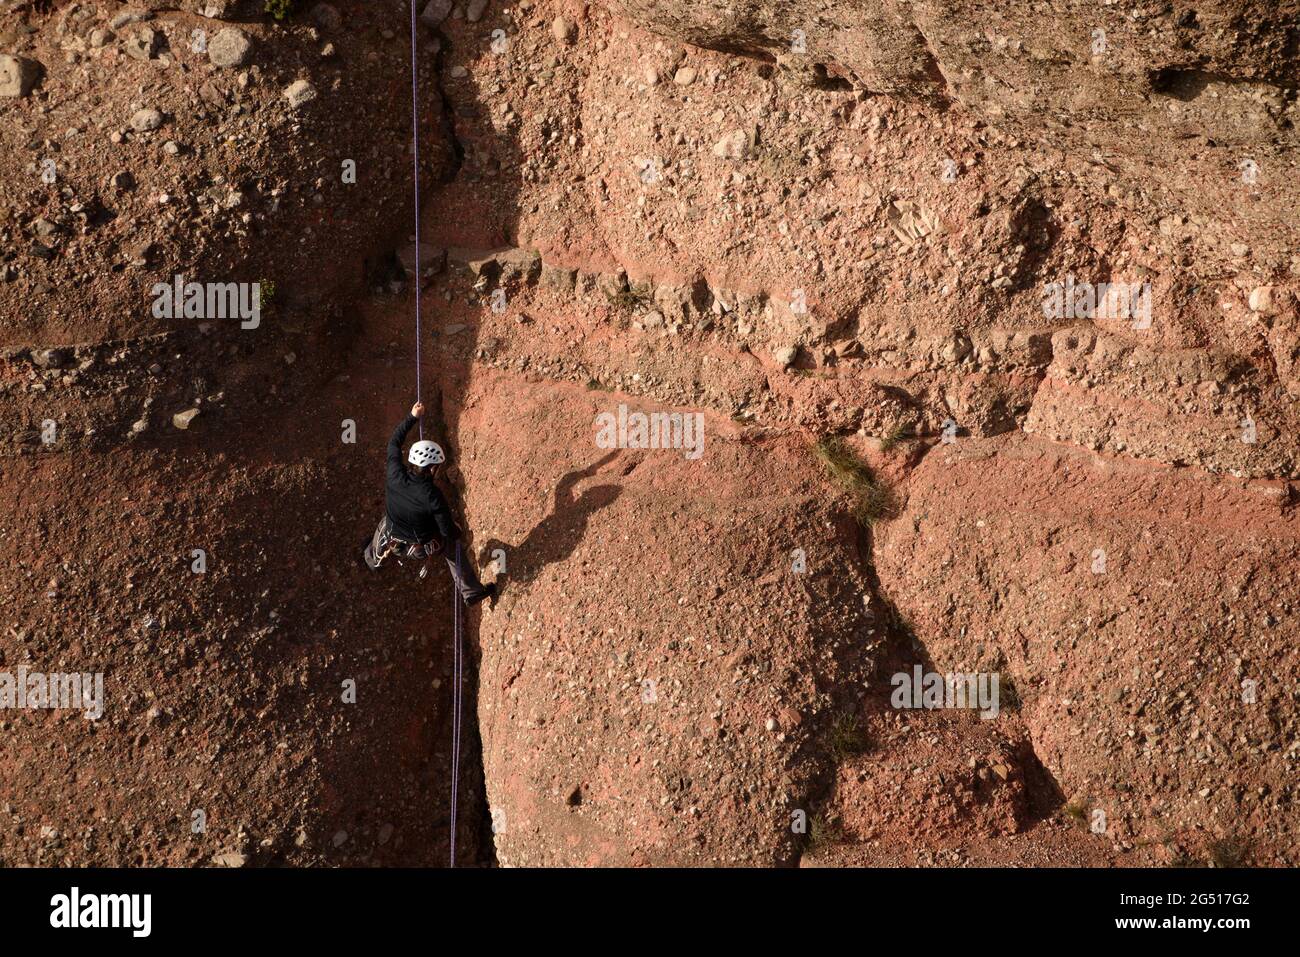 A climber descending the Cavall Bernat rock in Matadepera, in Sant Llorenç del Munt i l'Obac (Barcelona, Catalonia, Spain) Stock Photo